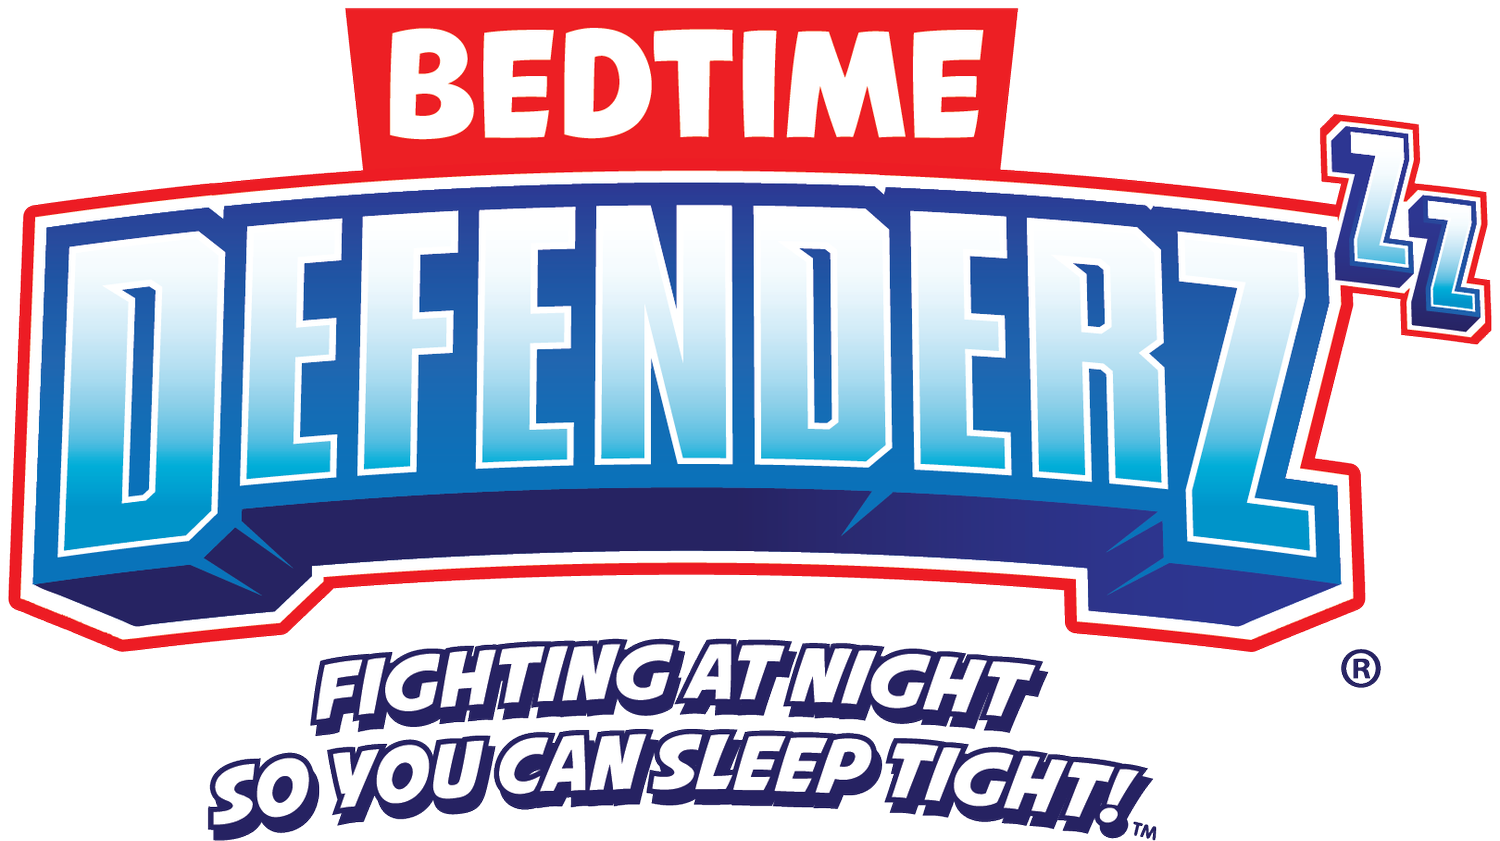 Bedtime Defenderz